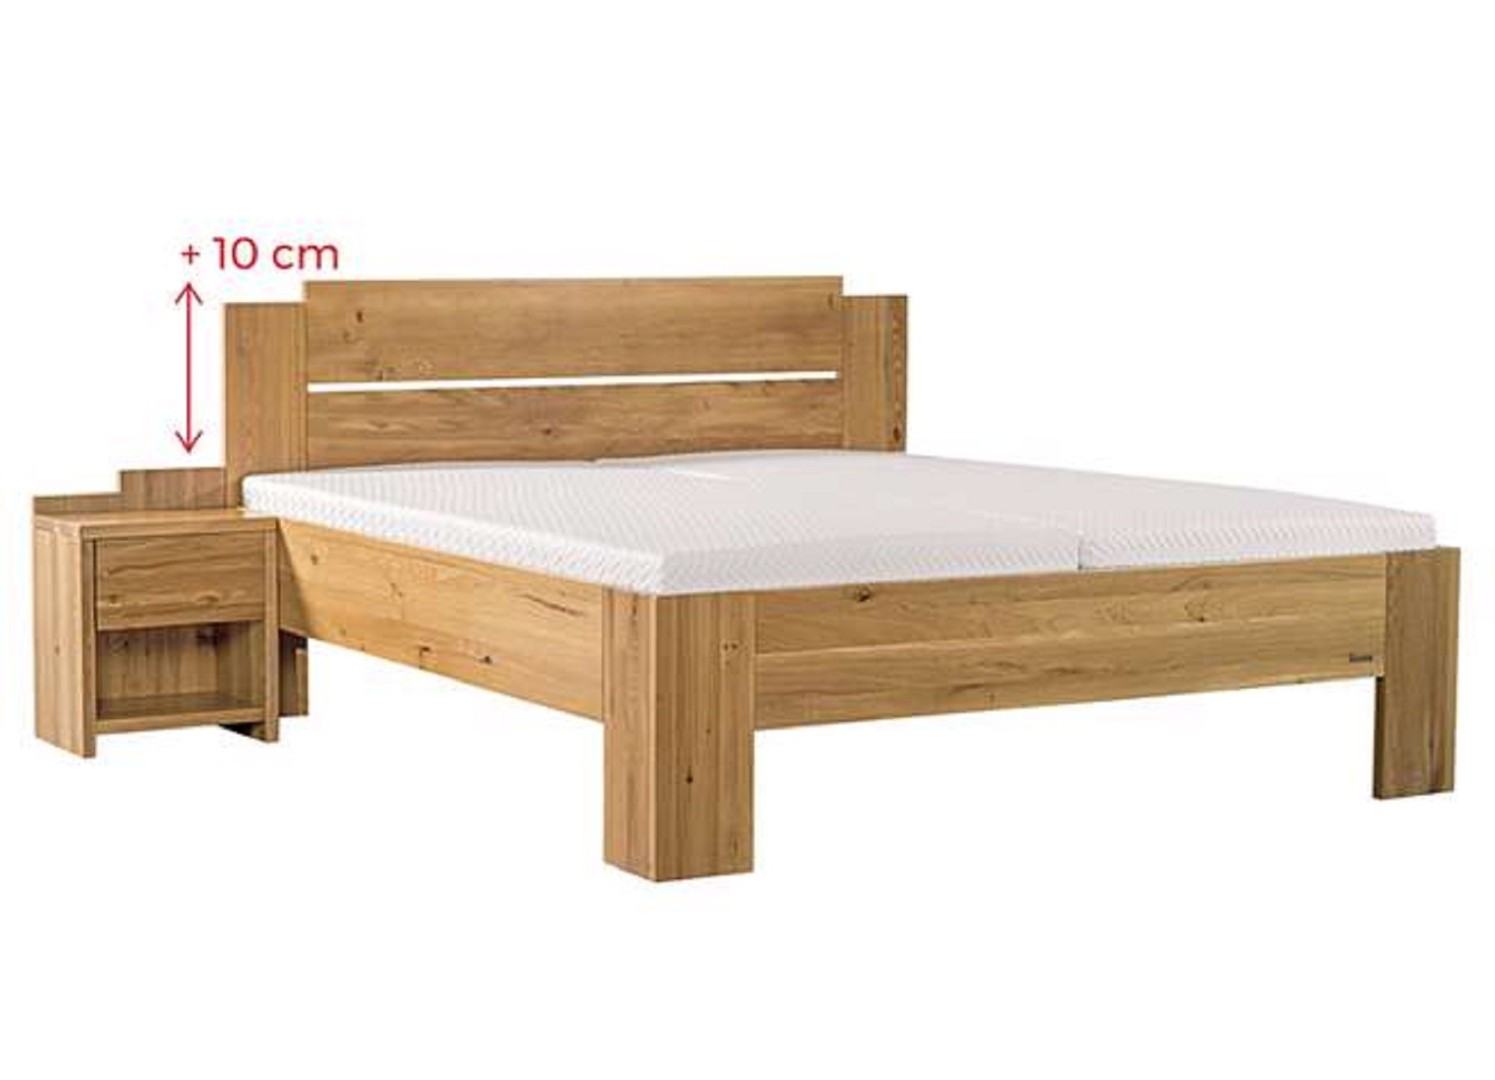 Ahorn GRADO MAX - masivní dubová postel se zvýšeným čelem 160 x 200 cm, dub masiv